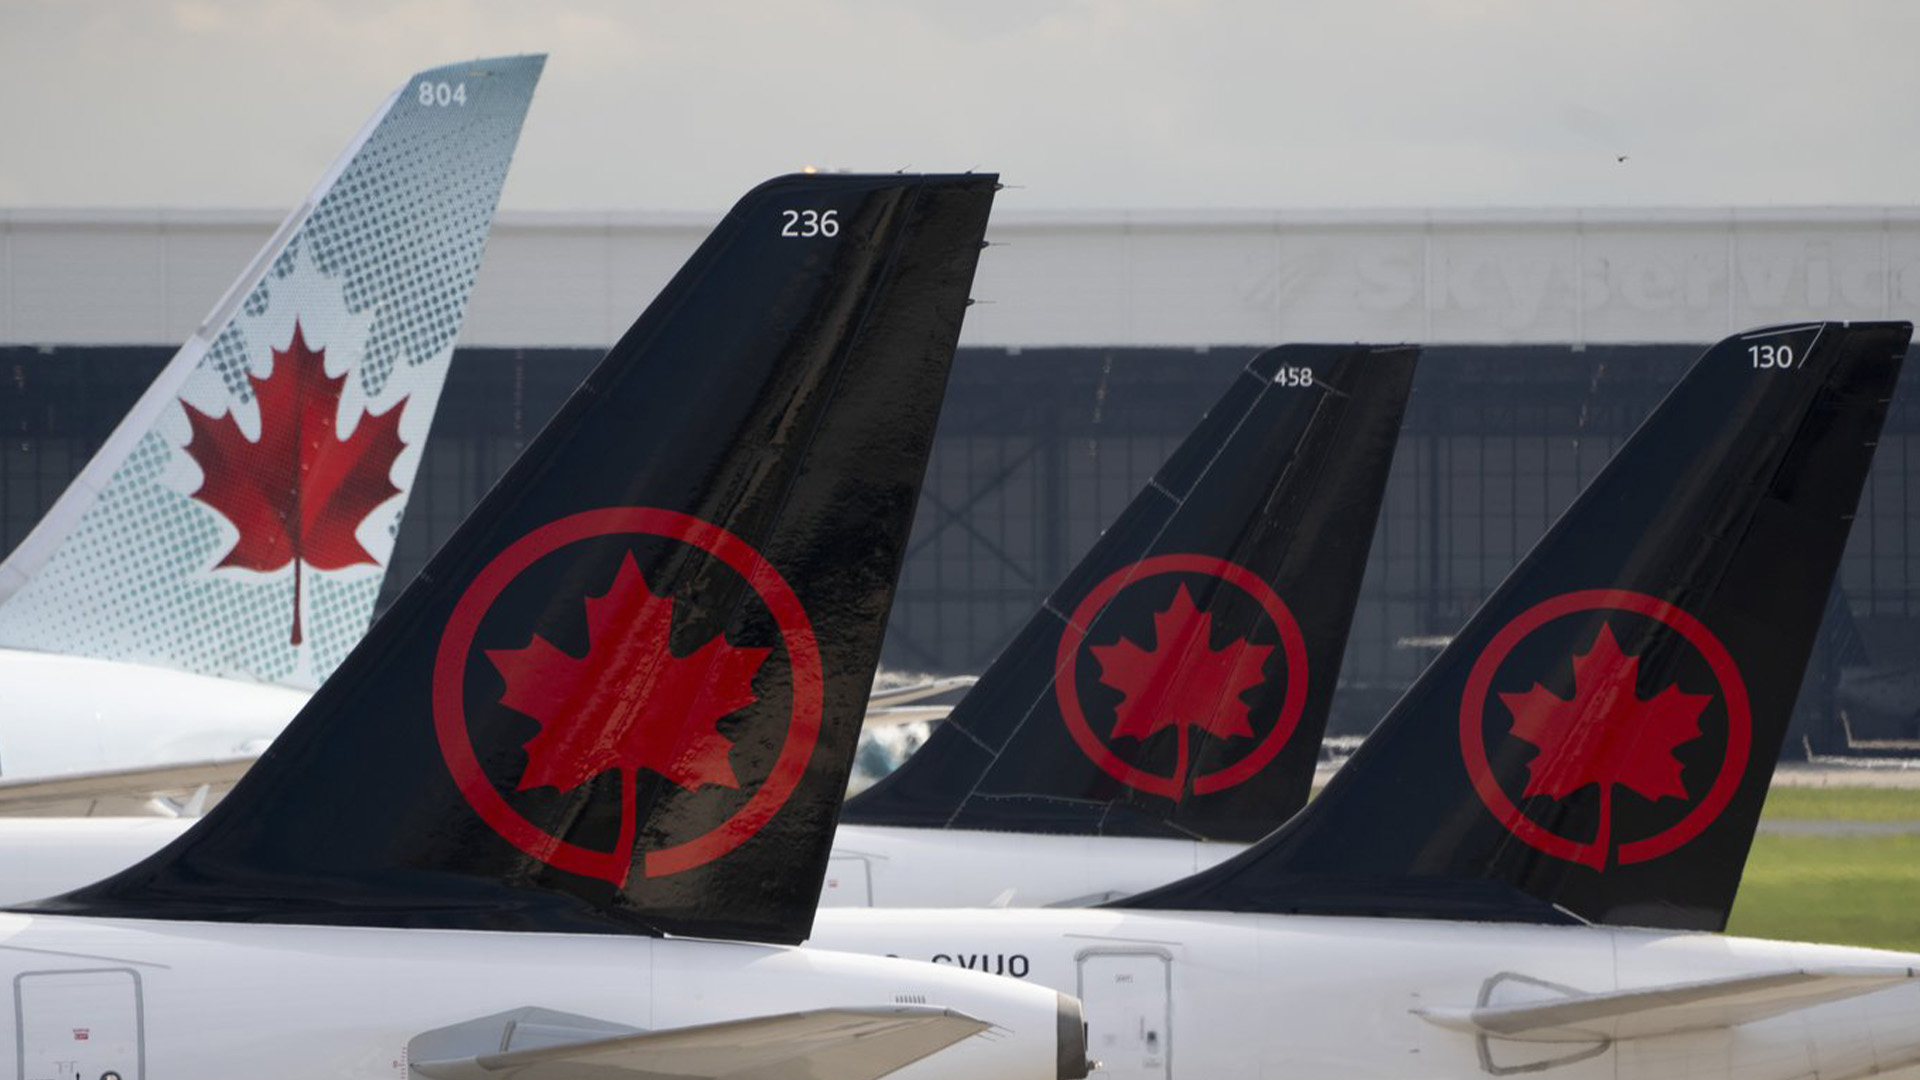 Les pilotes d'Air Canada manifestent aujourd'hui à l'aéroport Pearson de Toronto pour réclamer de meilleurs salaires et de meilleures conditions de travail alors que les négociations avec la plus grande compagnie aérienne du pays se poursuivent. Les logos d'Air Canada sont visibles sur les queues des avions à l'aéroport de Montréal, au Québec, le lundi 26 juin 2023.